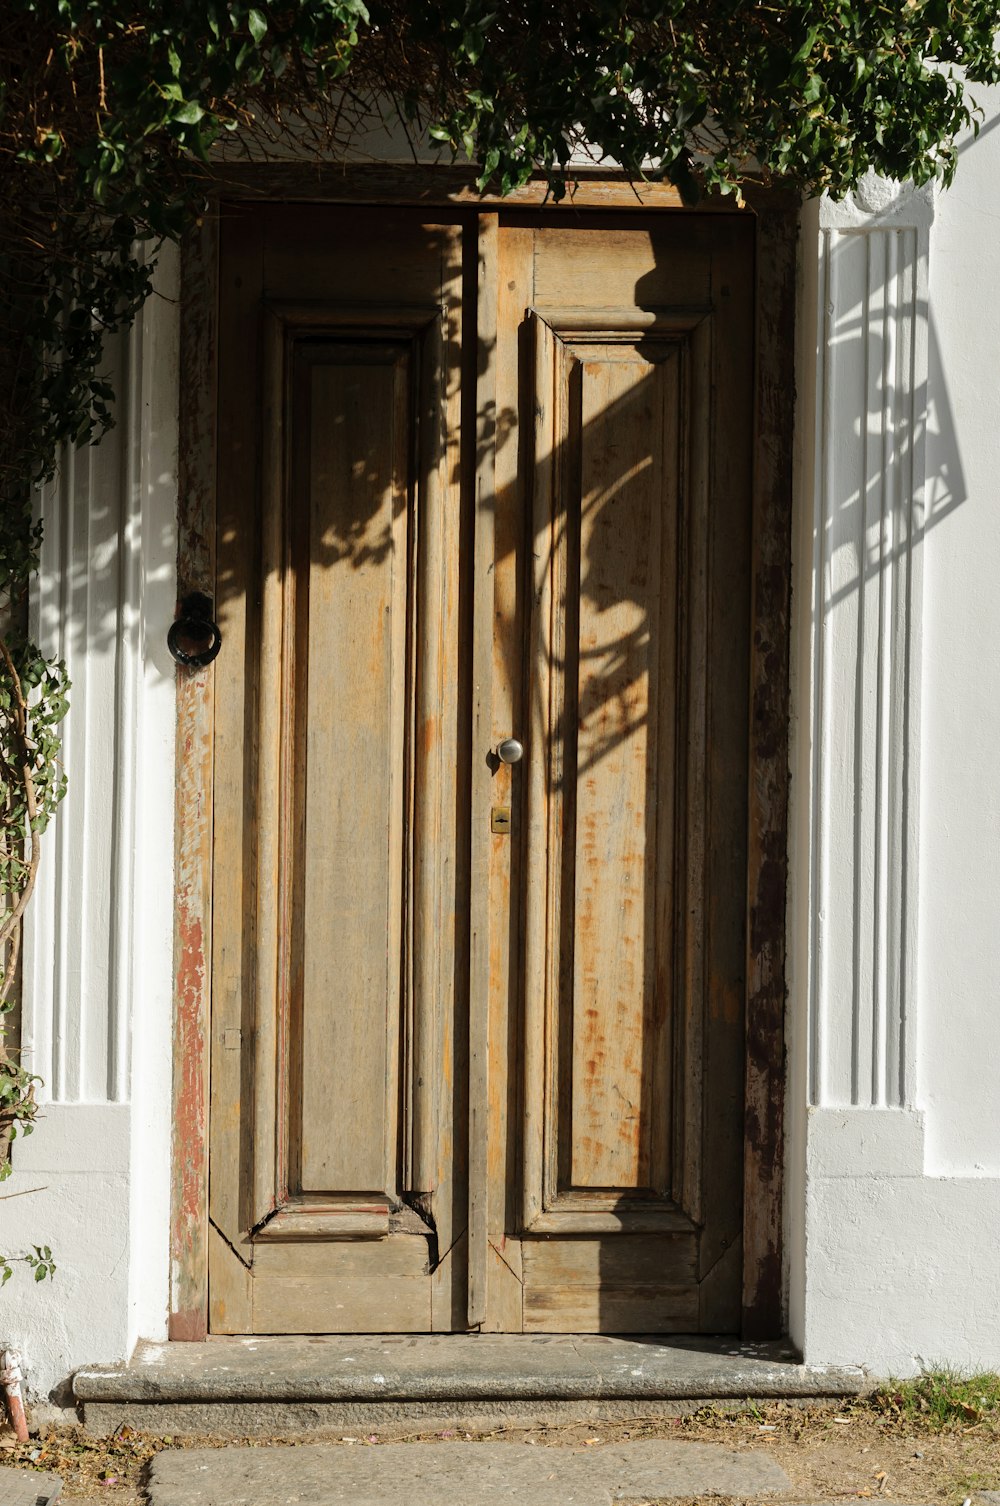 an old wooden door with vines growing over it